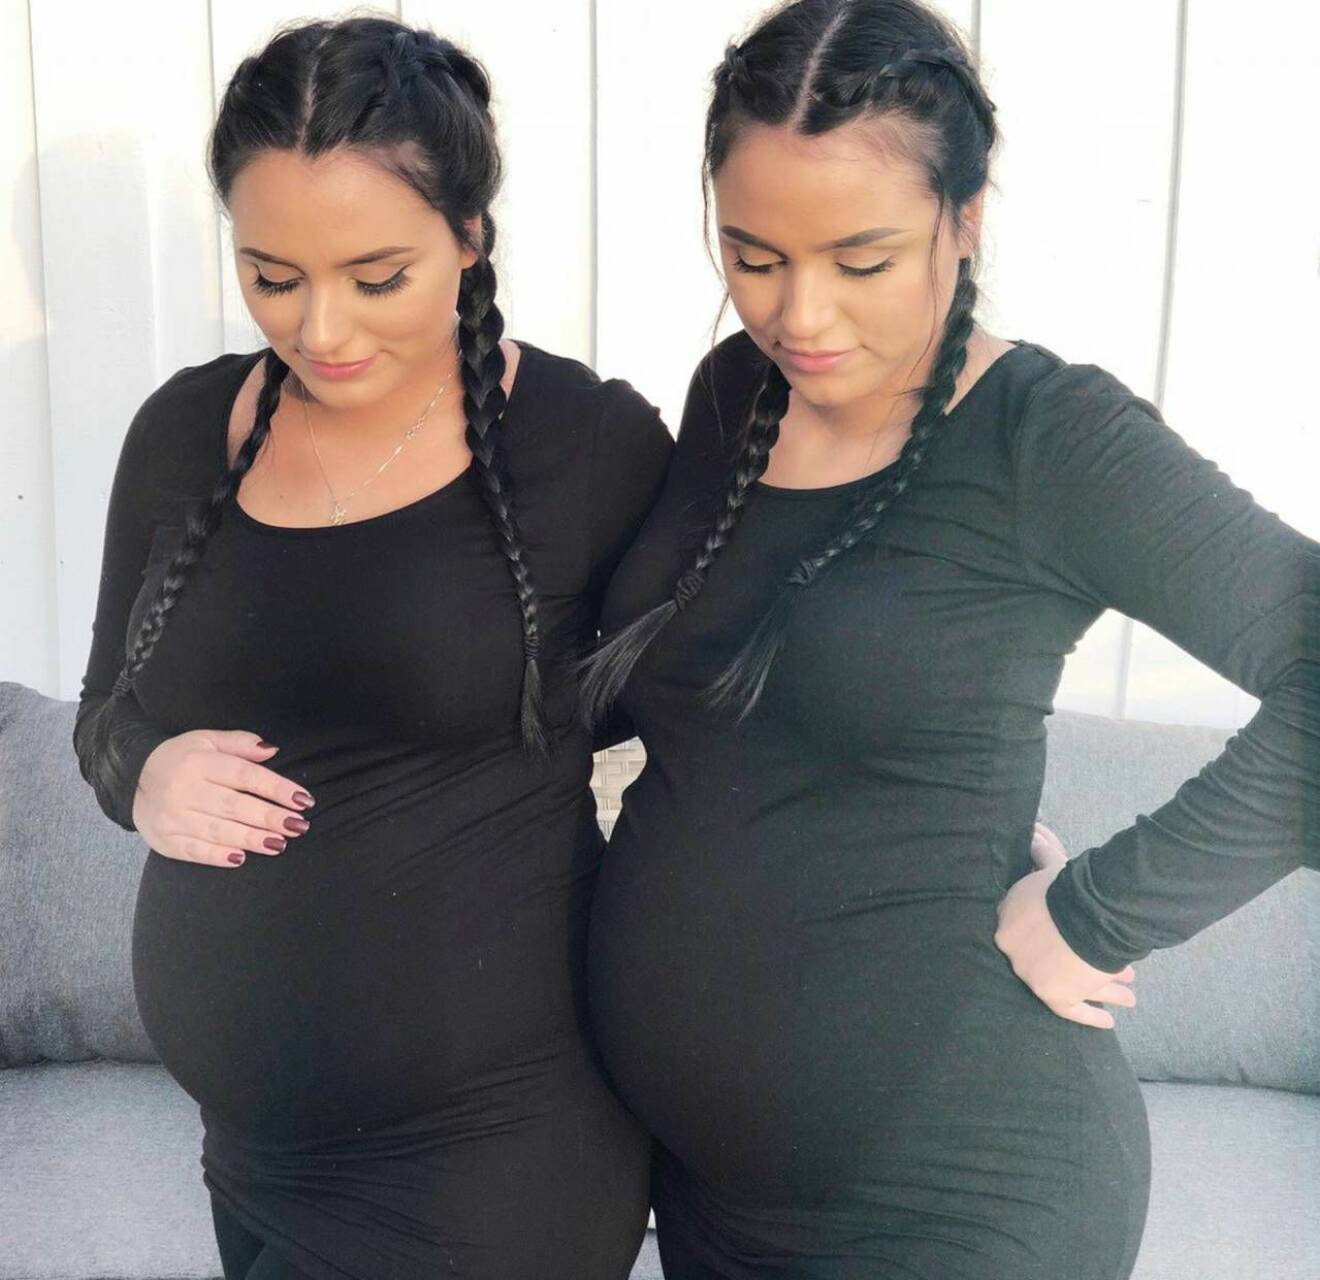 Tvillingarna Johana och Leslie visar upp sina gravidmagar i matchande kläder på Instagram. En tid senare förlorade Johana sitt barn.